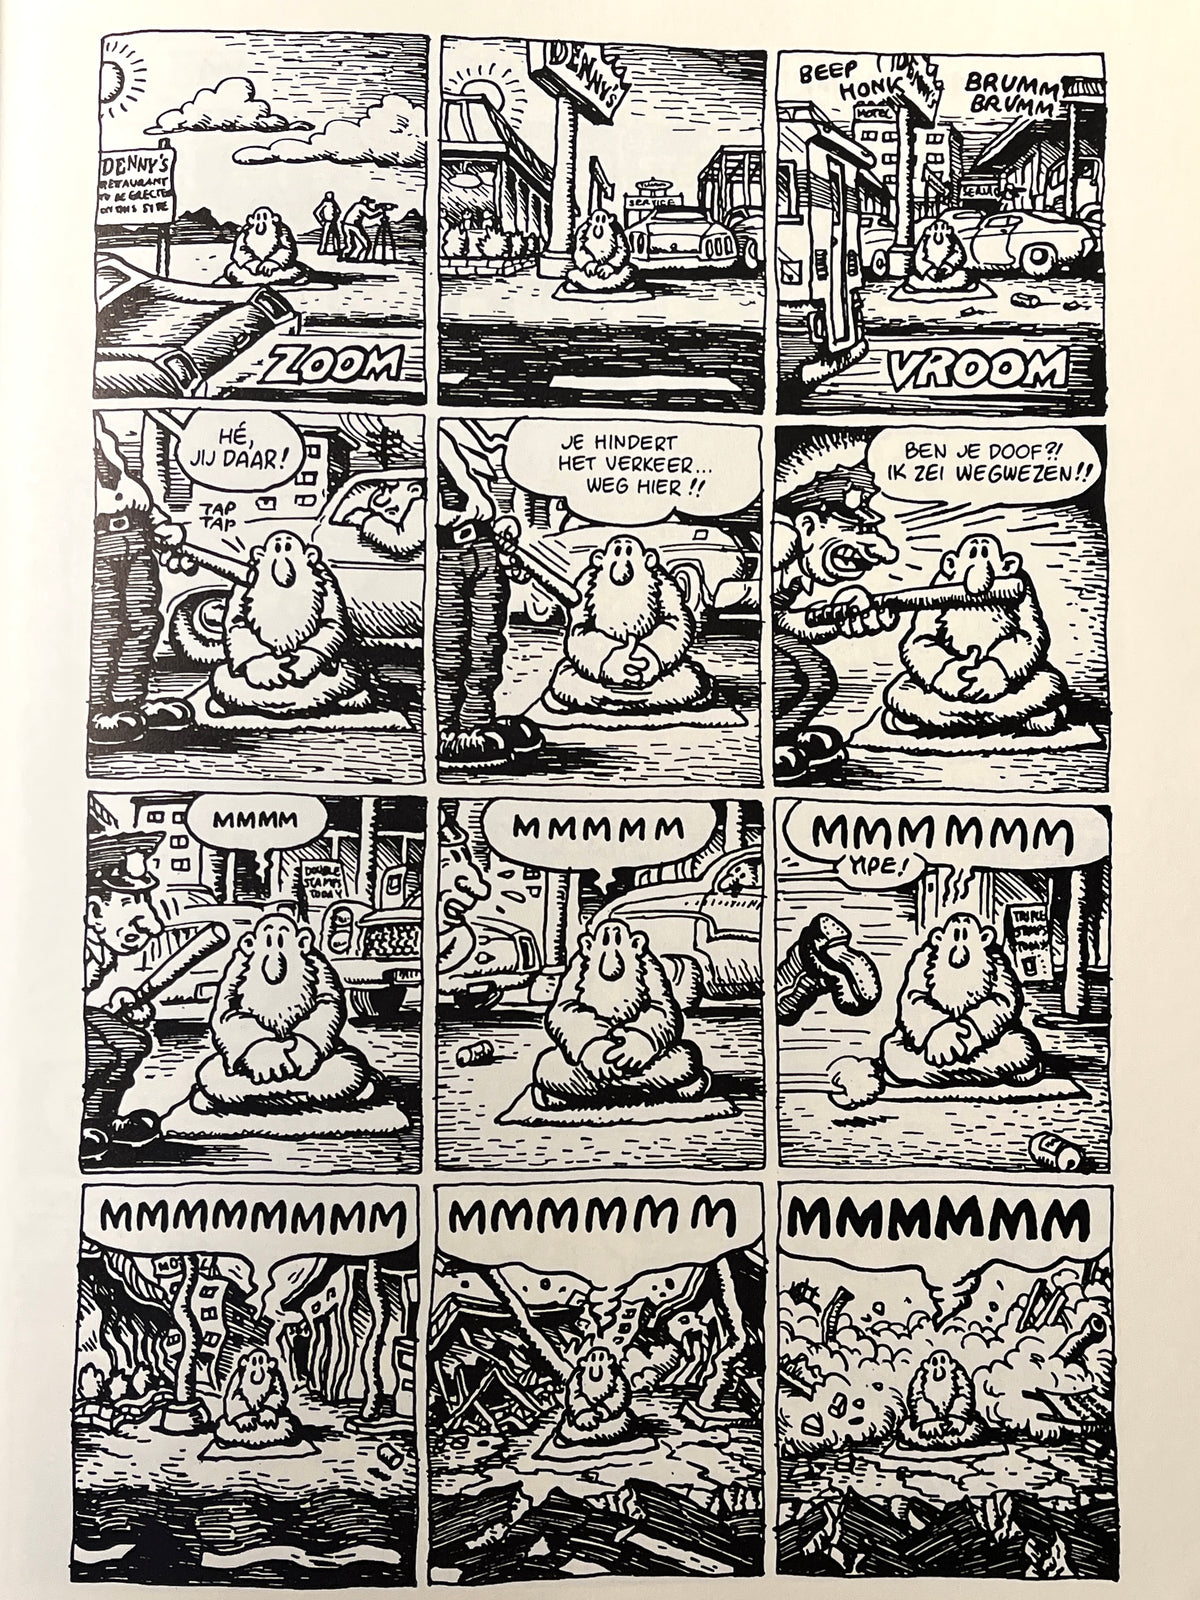 Crumb Crumb, Robert Crumb, Oog & Blik, 1992, SC, VG.